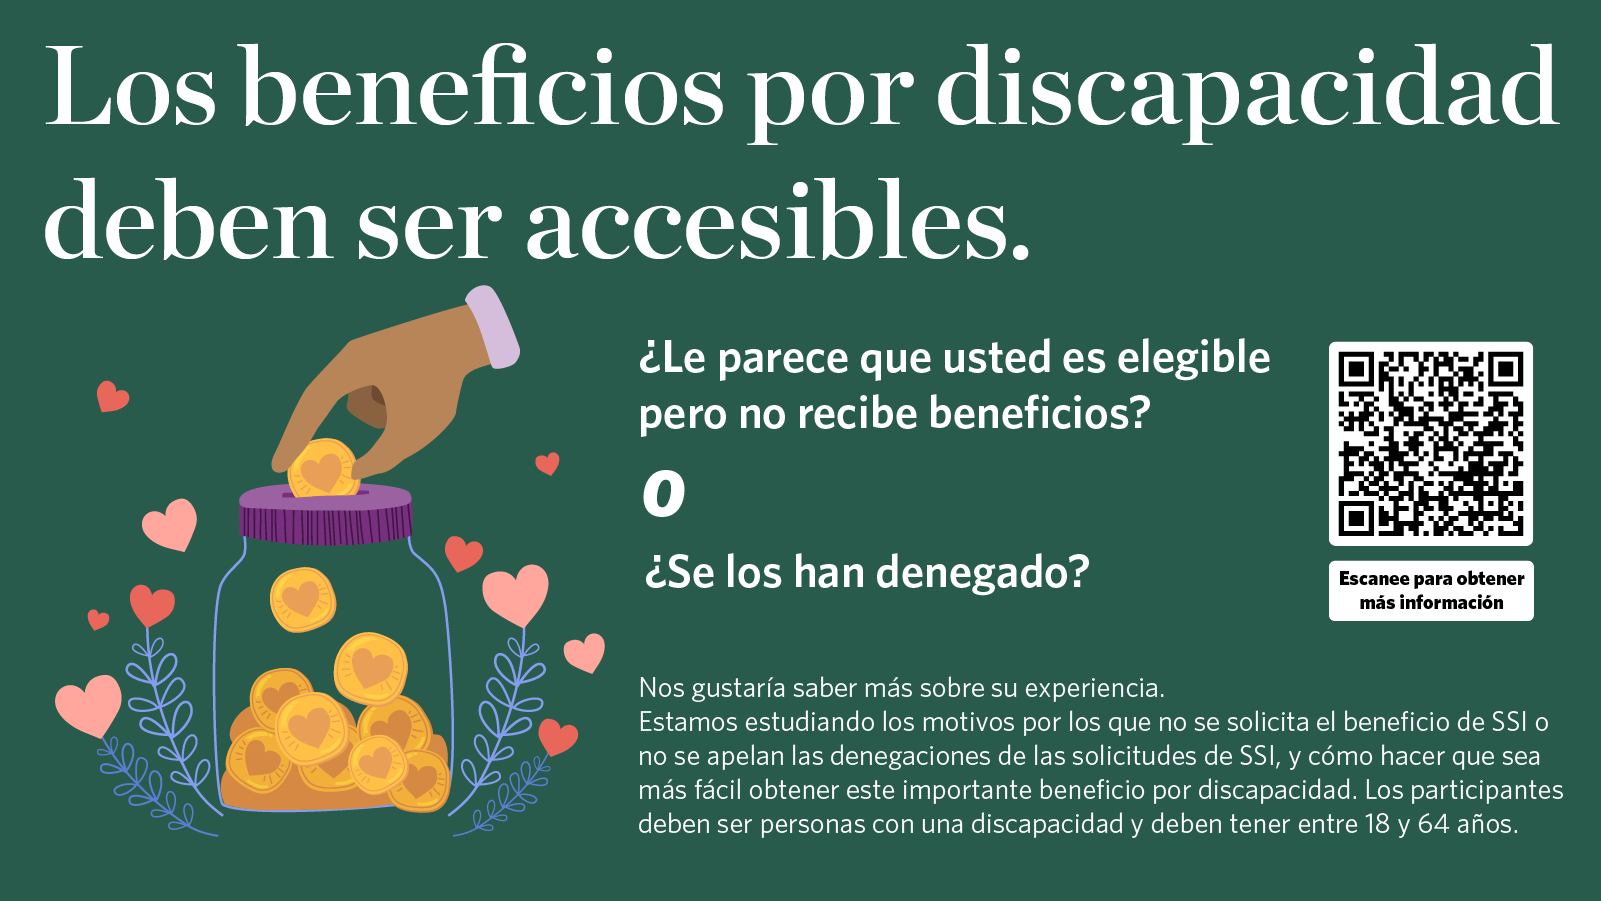 Los beneficios por discapacidad deben ser accesible